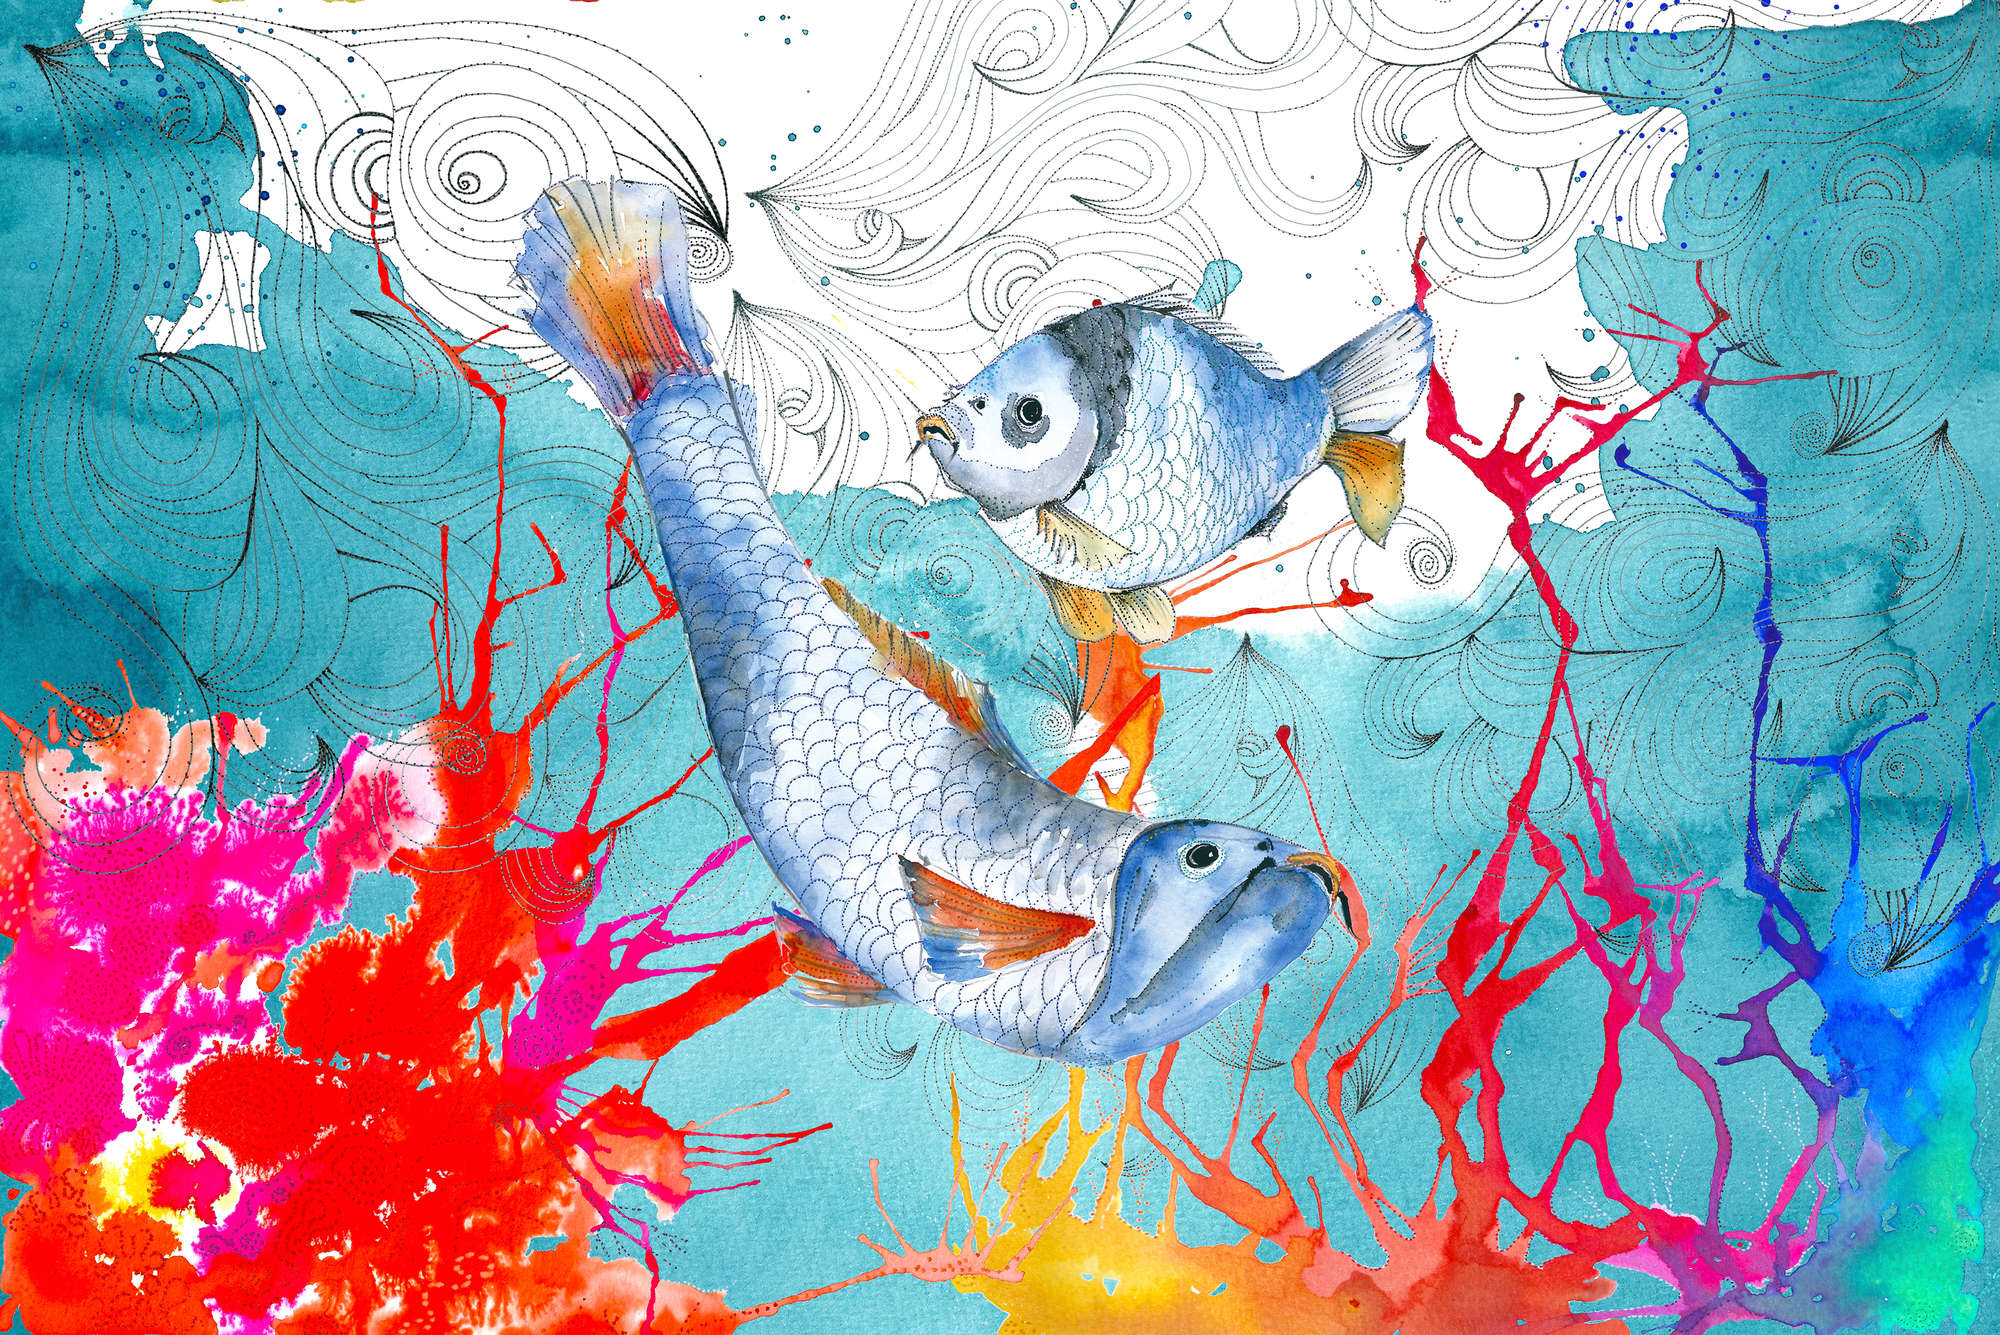             Aquarell Fototapete Fisch Motiv in Blau und Rosa auf Matt Glattvlies
        